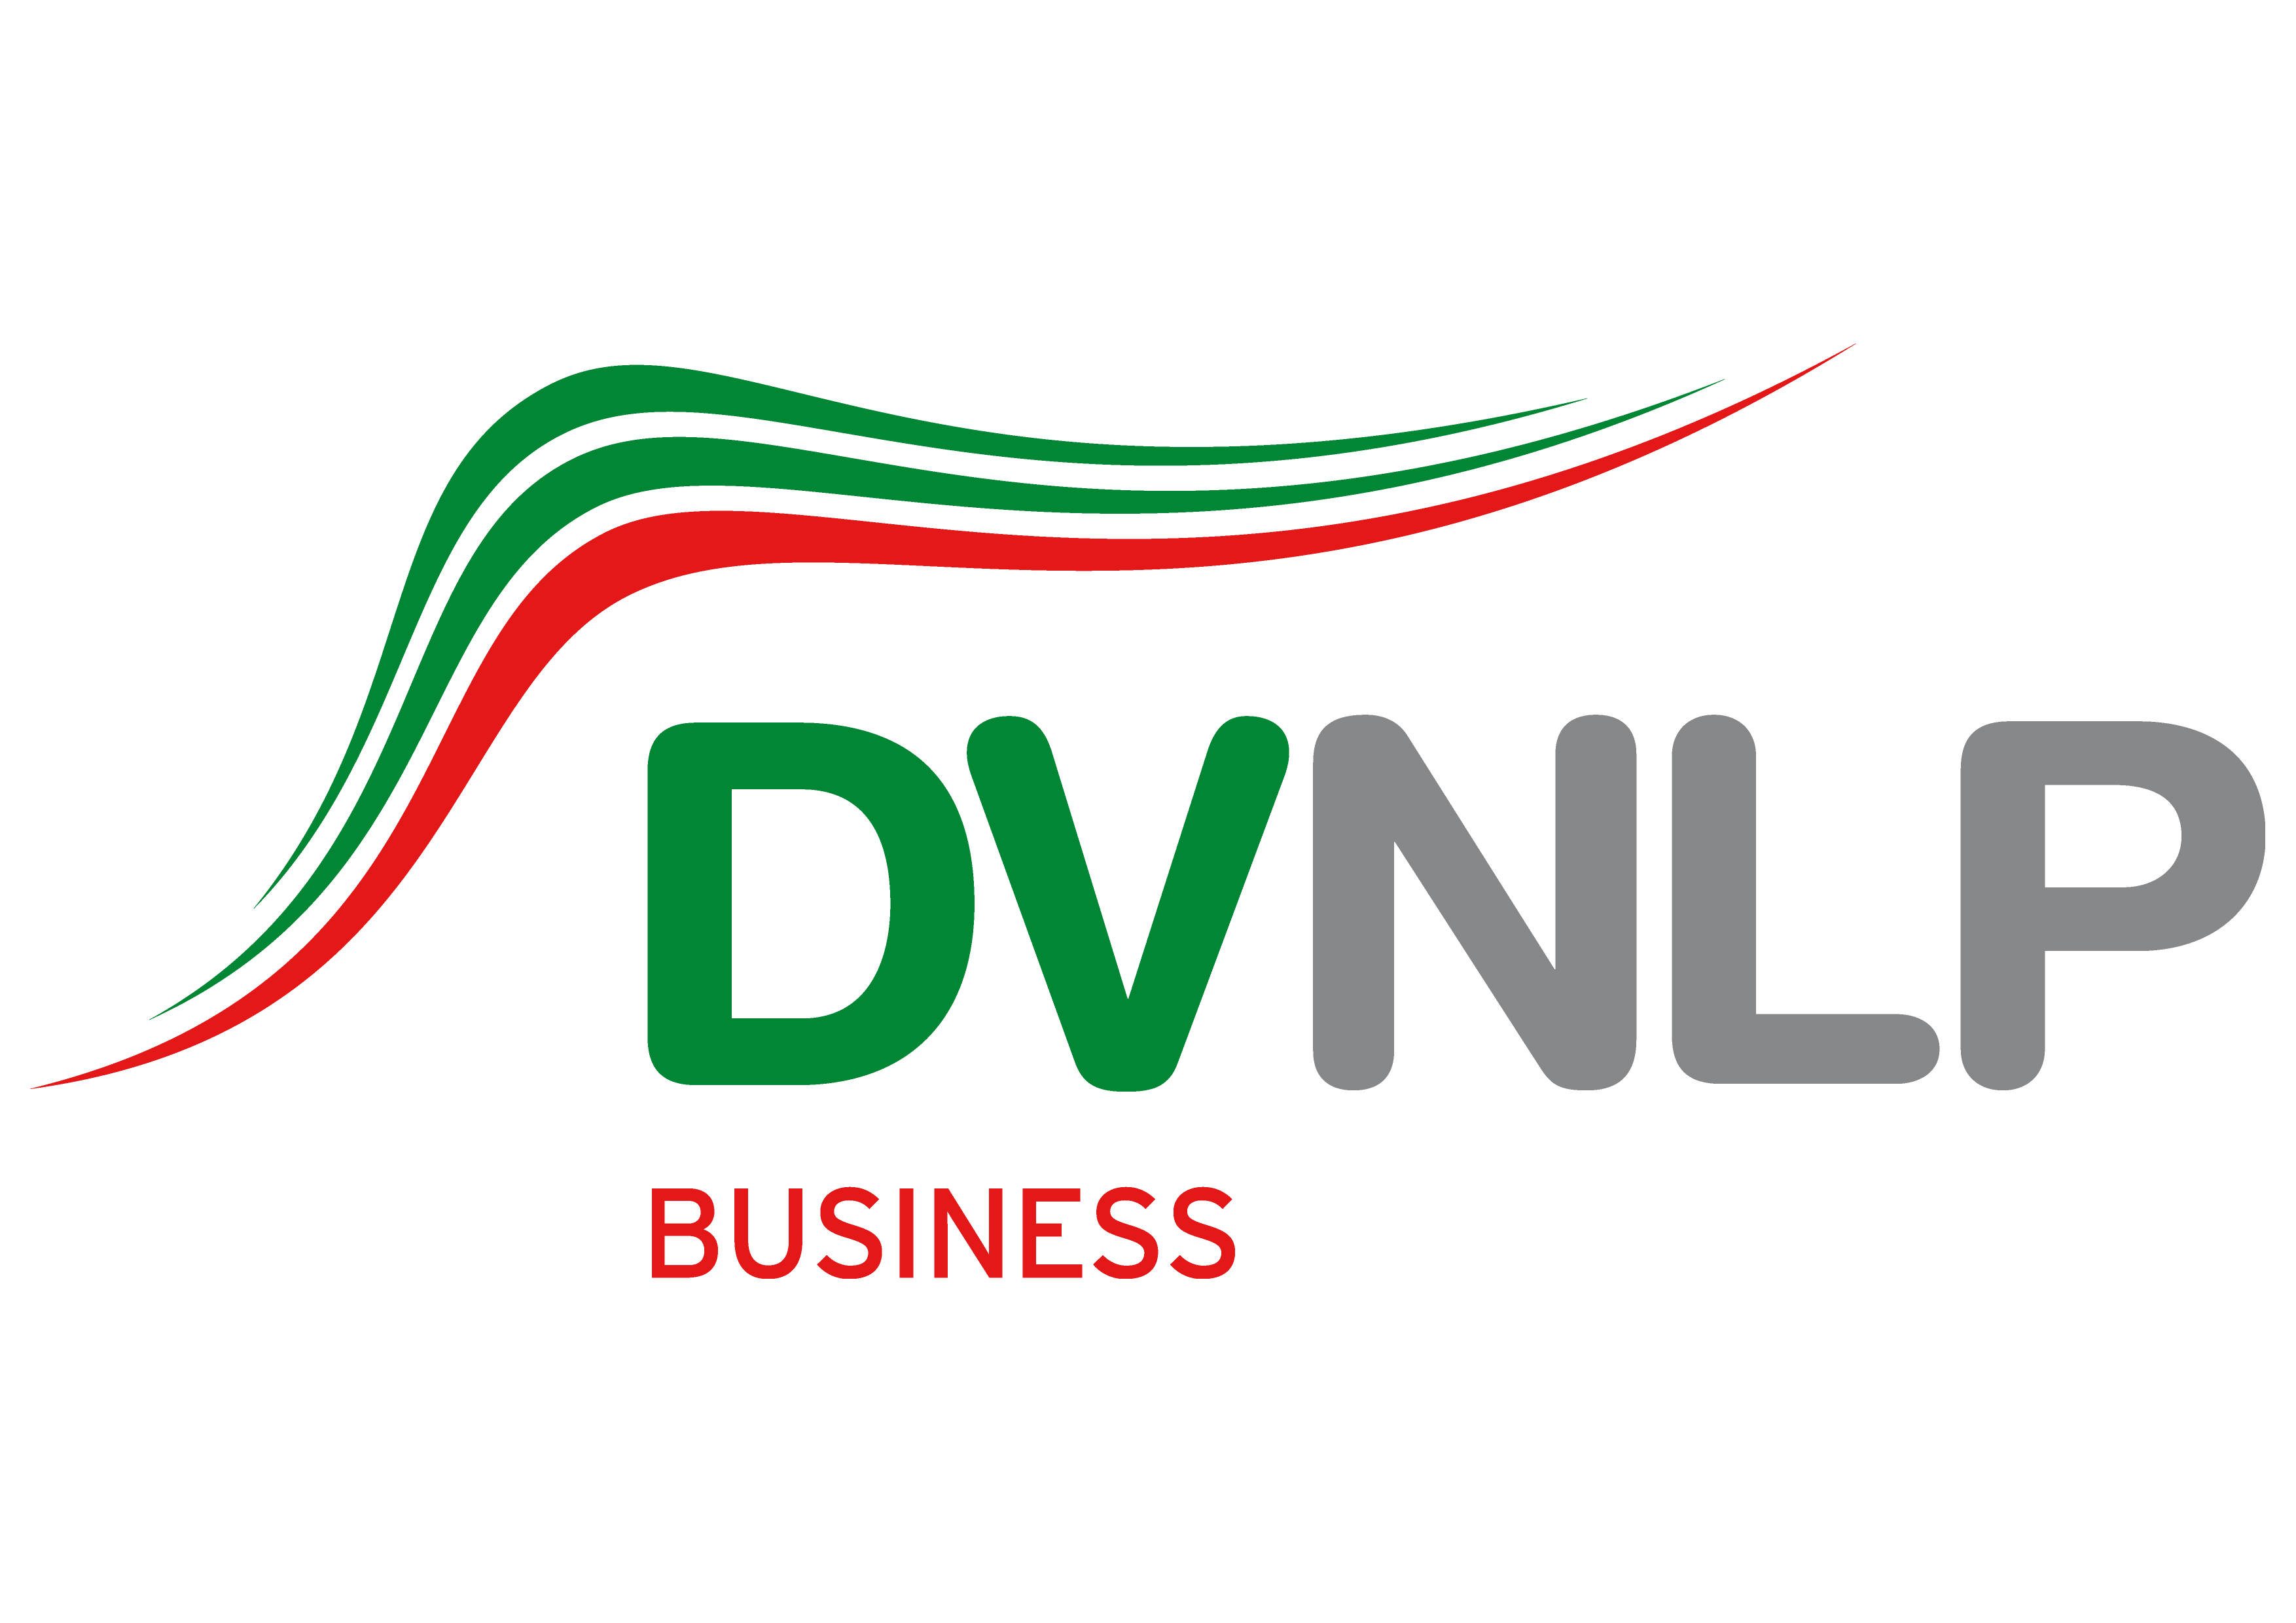 DVNLP Business